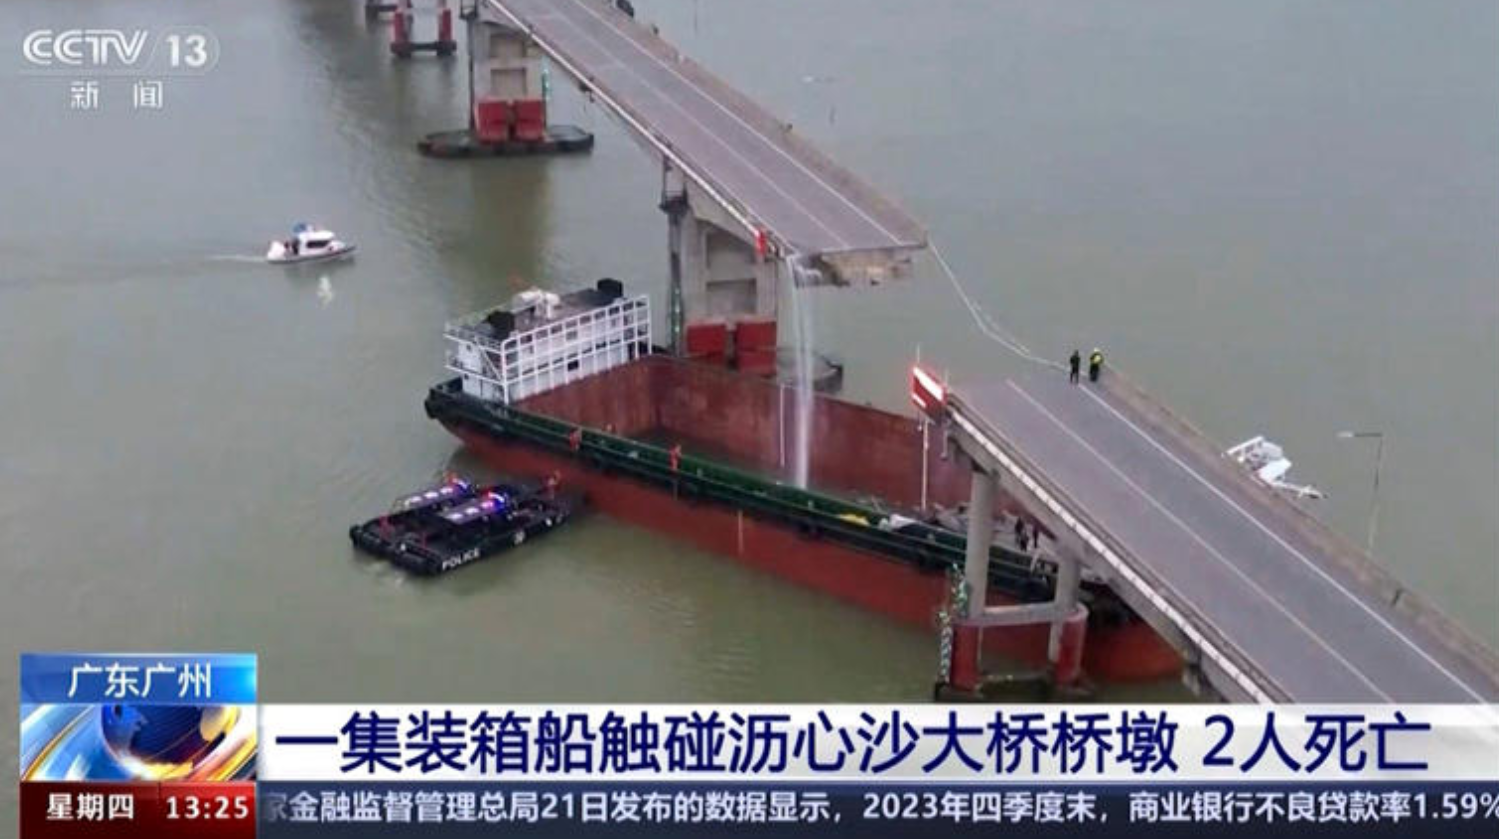 Frachter rammt Brückenpfeiler – Linienbus stürzt von der Brücke auf das Schiff  - mehrere Tote und Vermisste